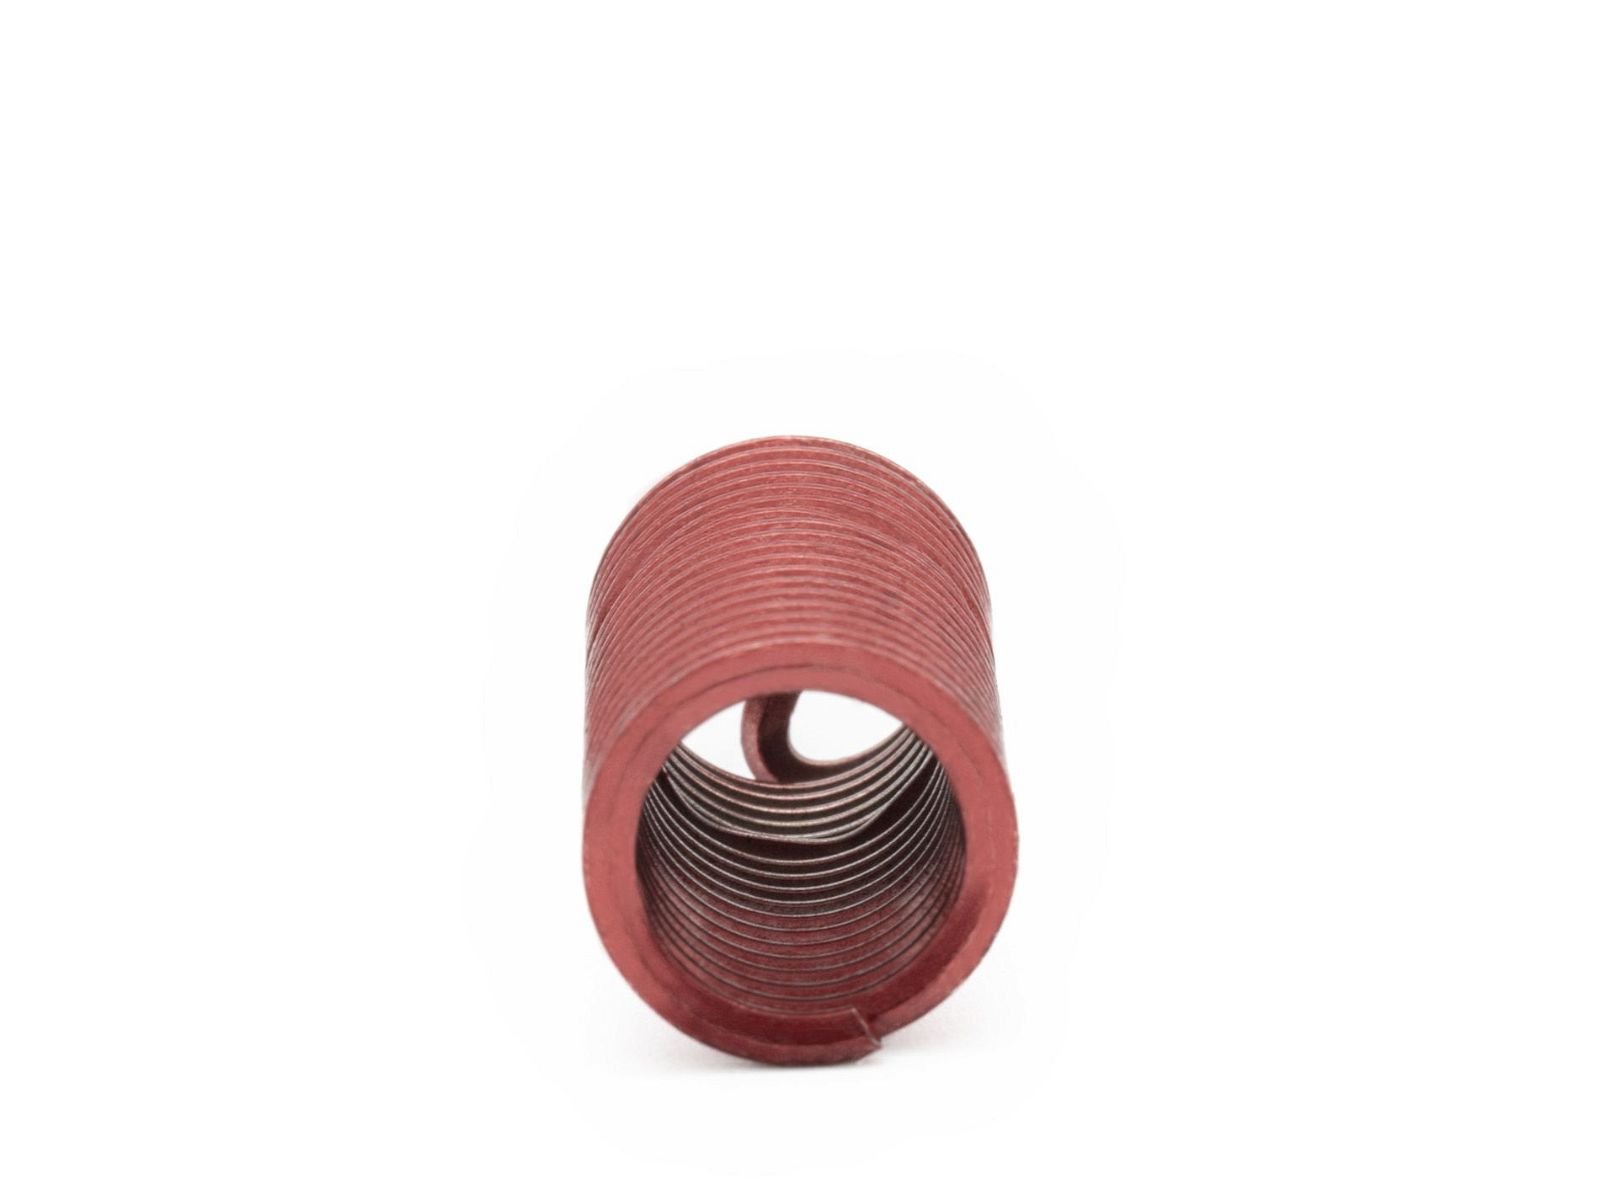 BaerCoil Drahtgewindeeinsätze UNC 5/8 x 11 - 3,0 D (47,63 mm) - screw grip (schraubensichernd) - 50 Stück